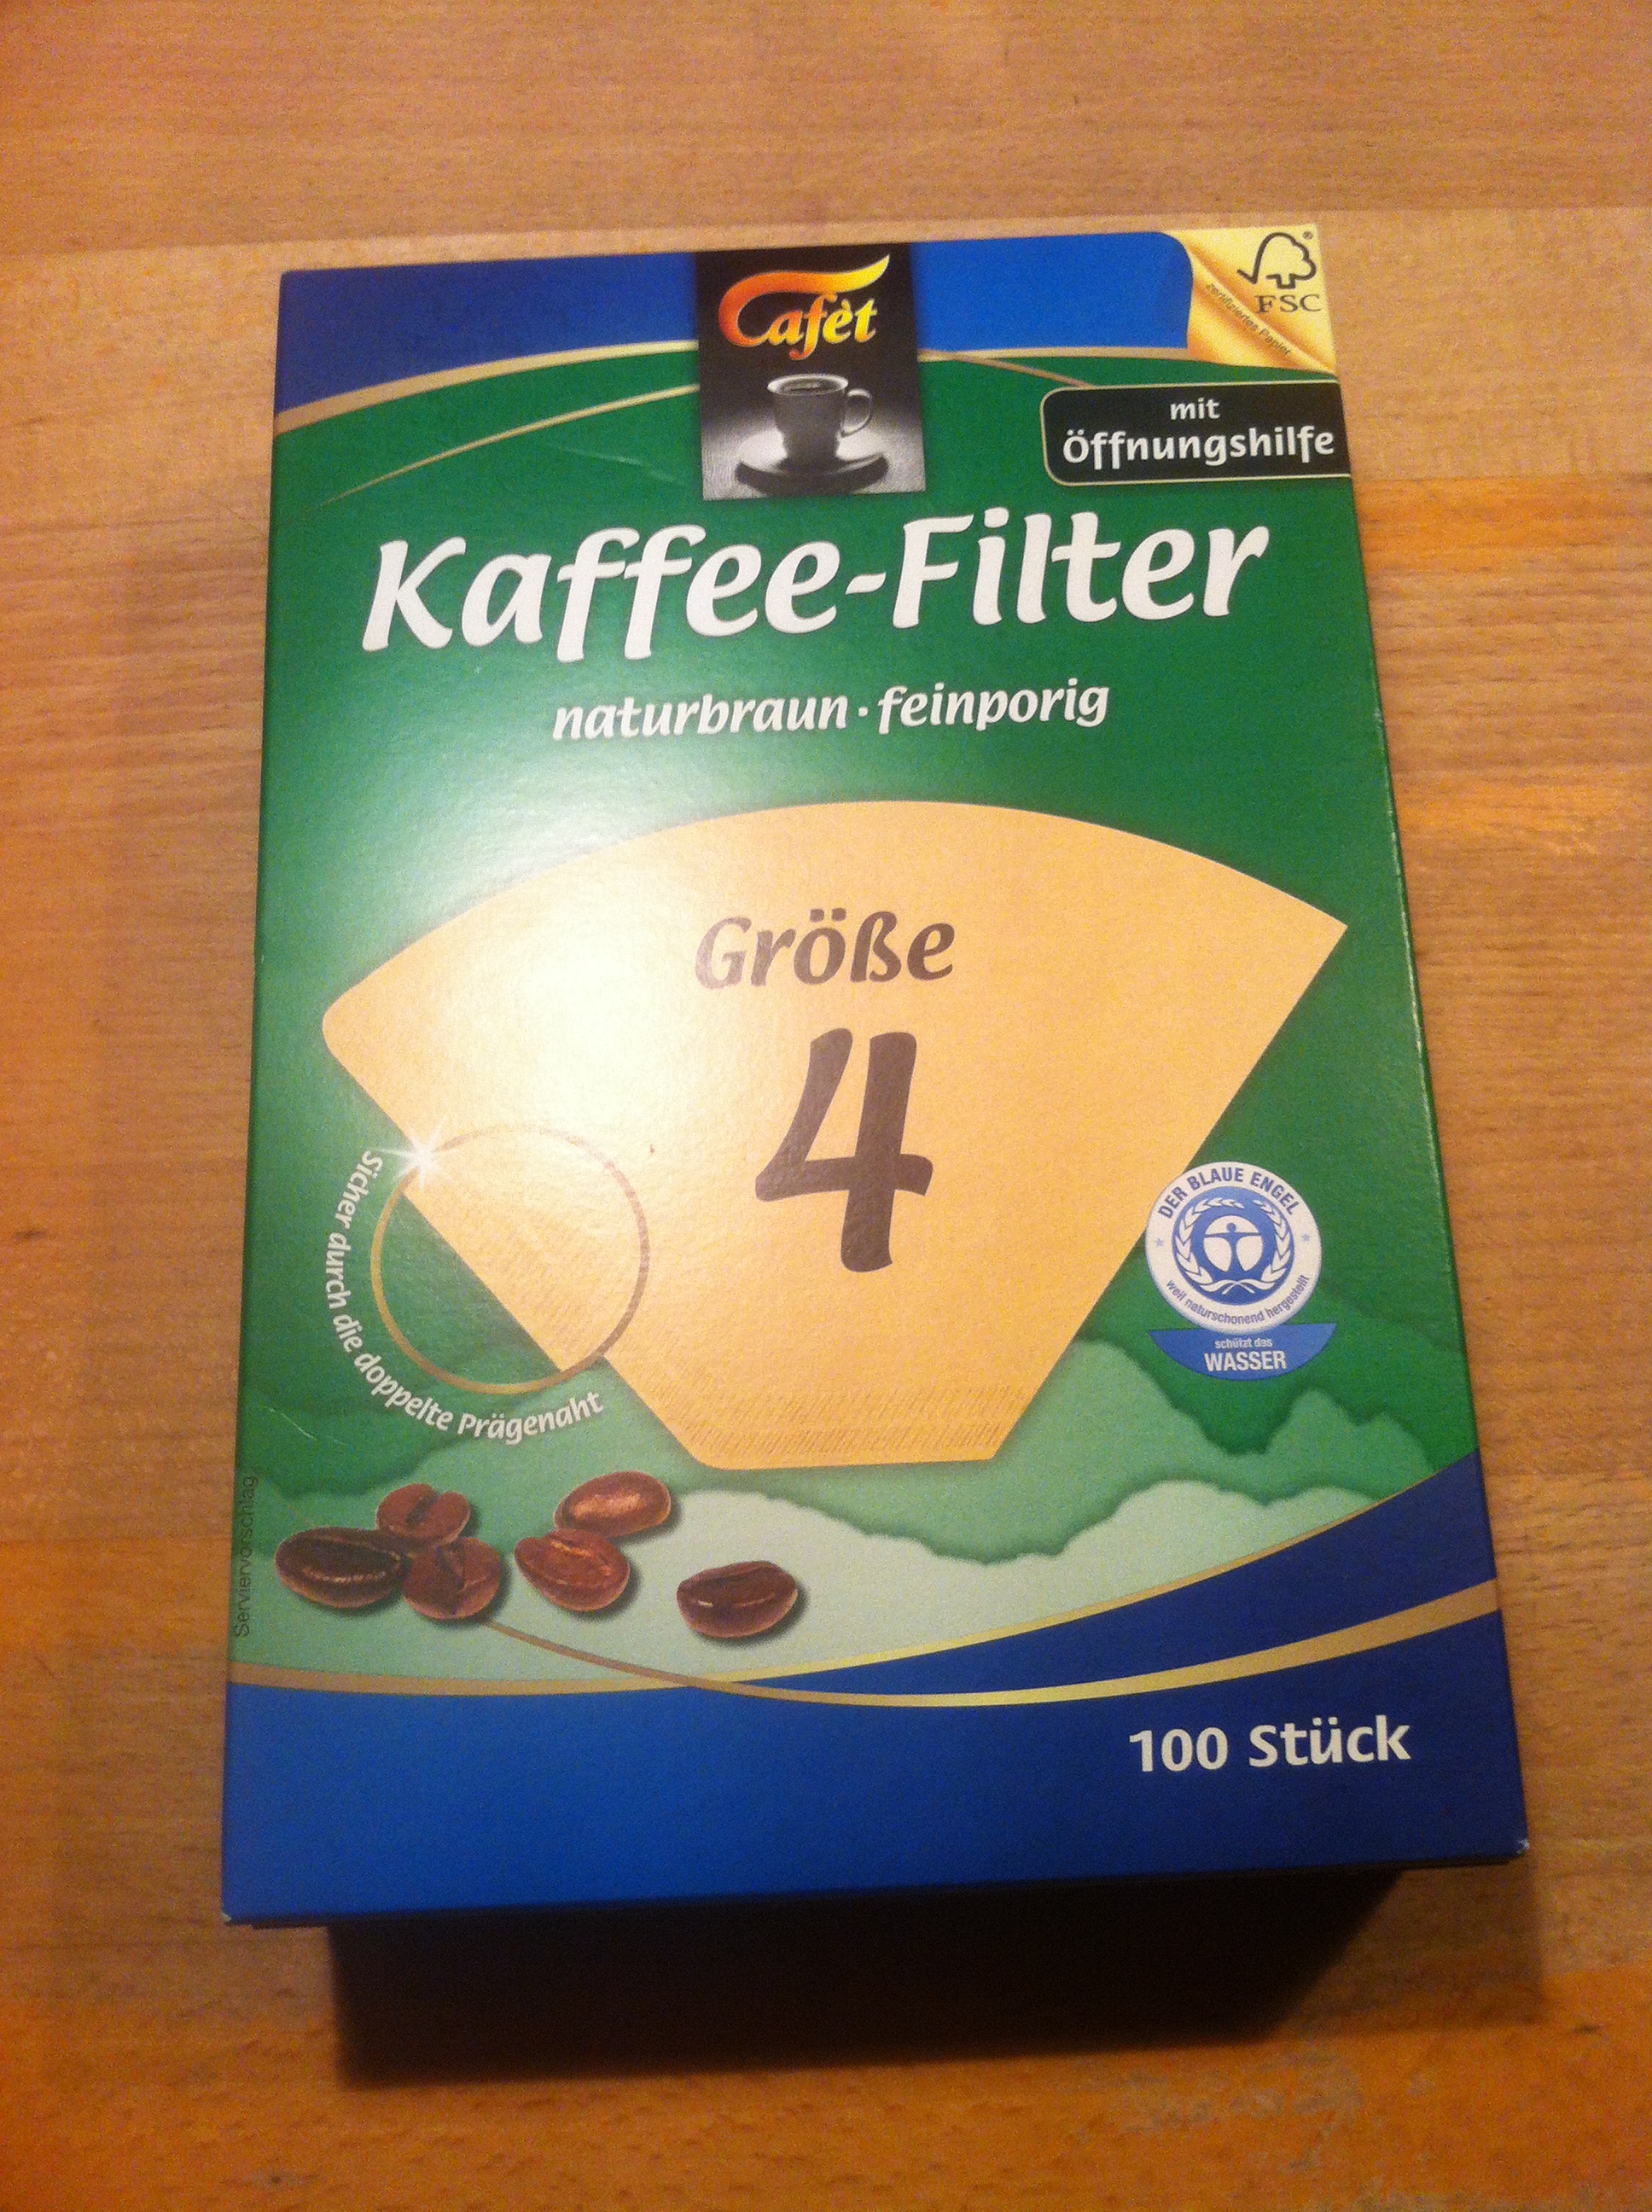 Kaffee Filter von Netto mit dem blauen Engel drauf - 0,45 € kosten 100 Stück